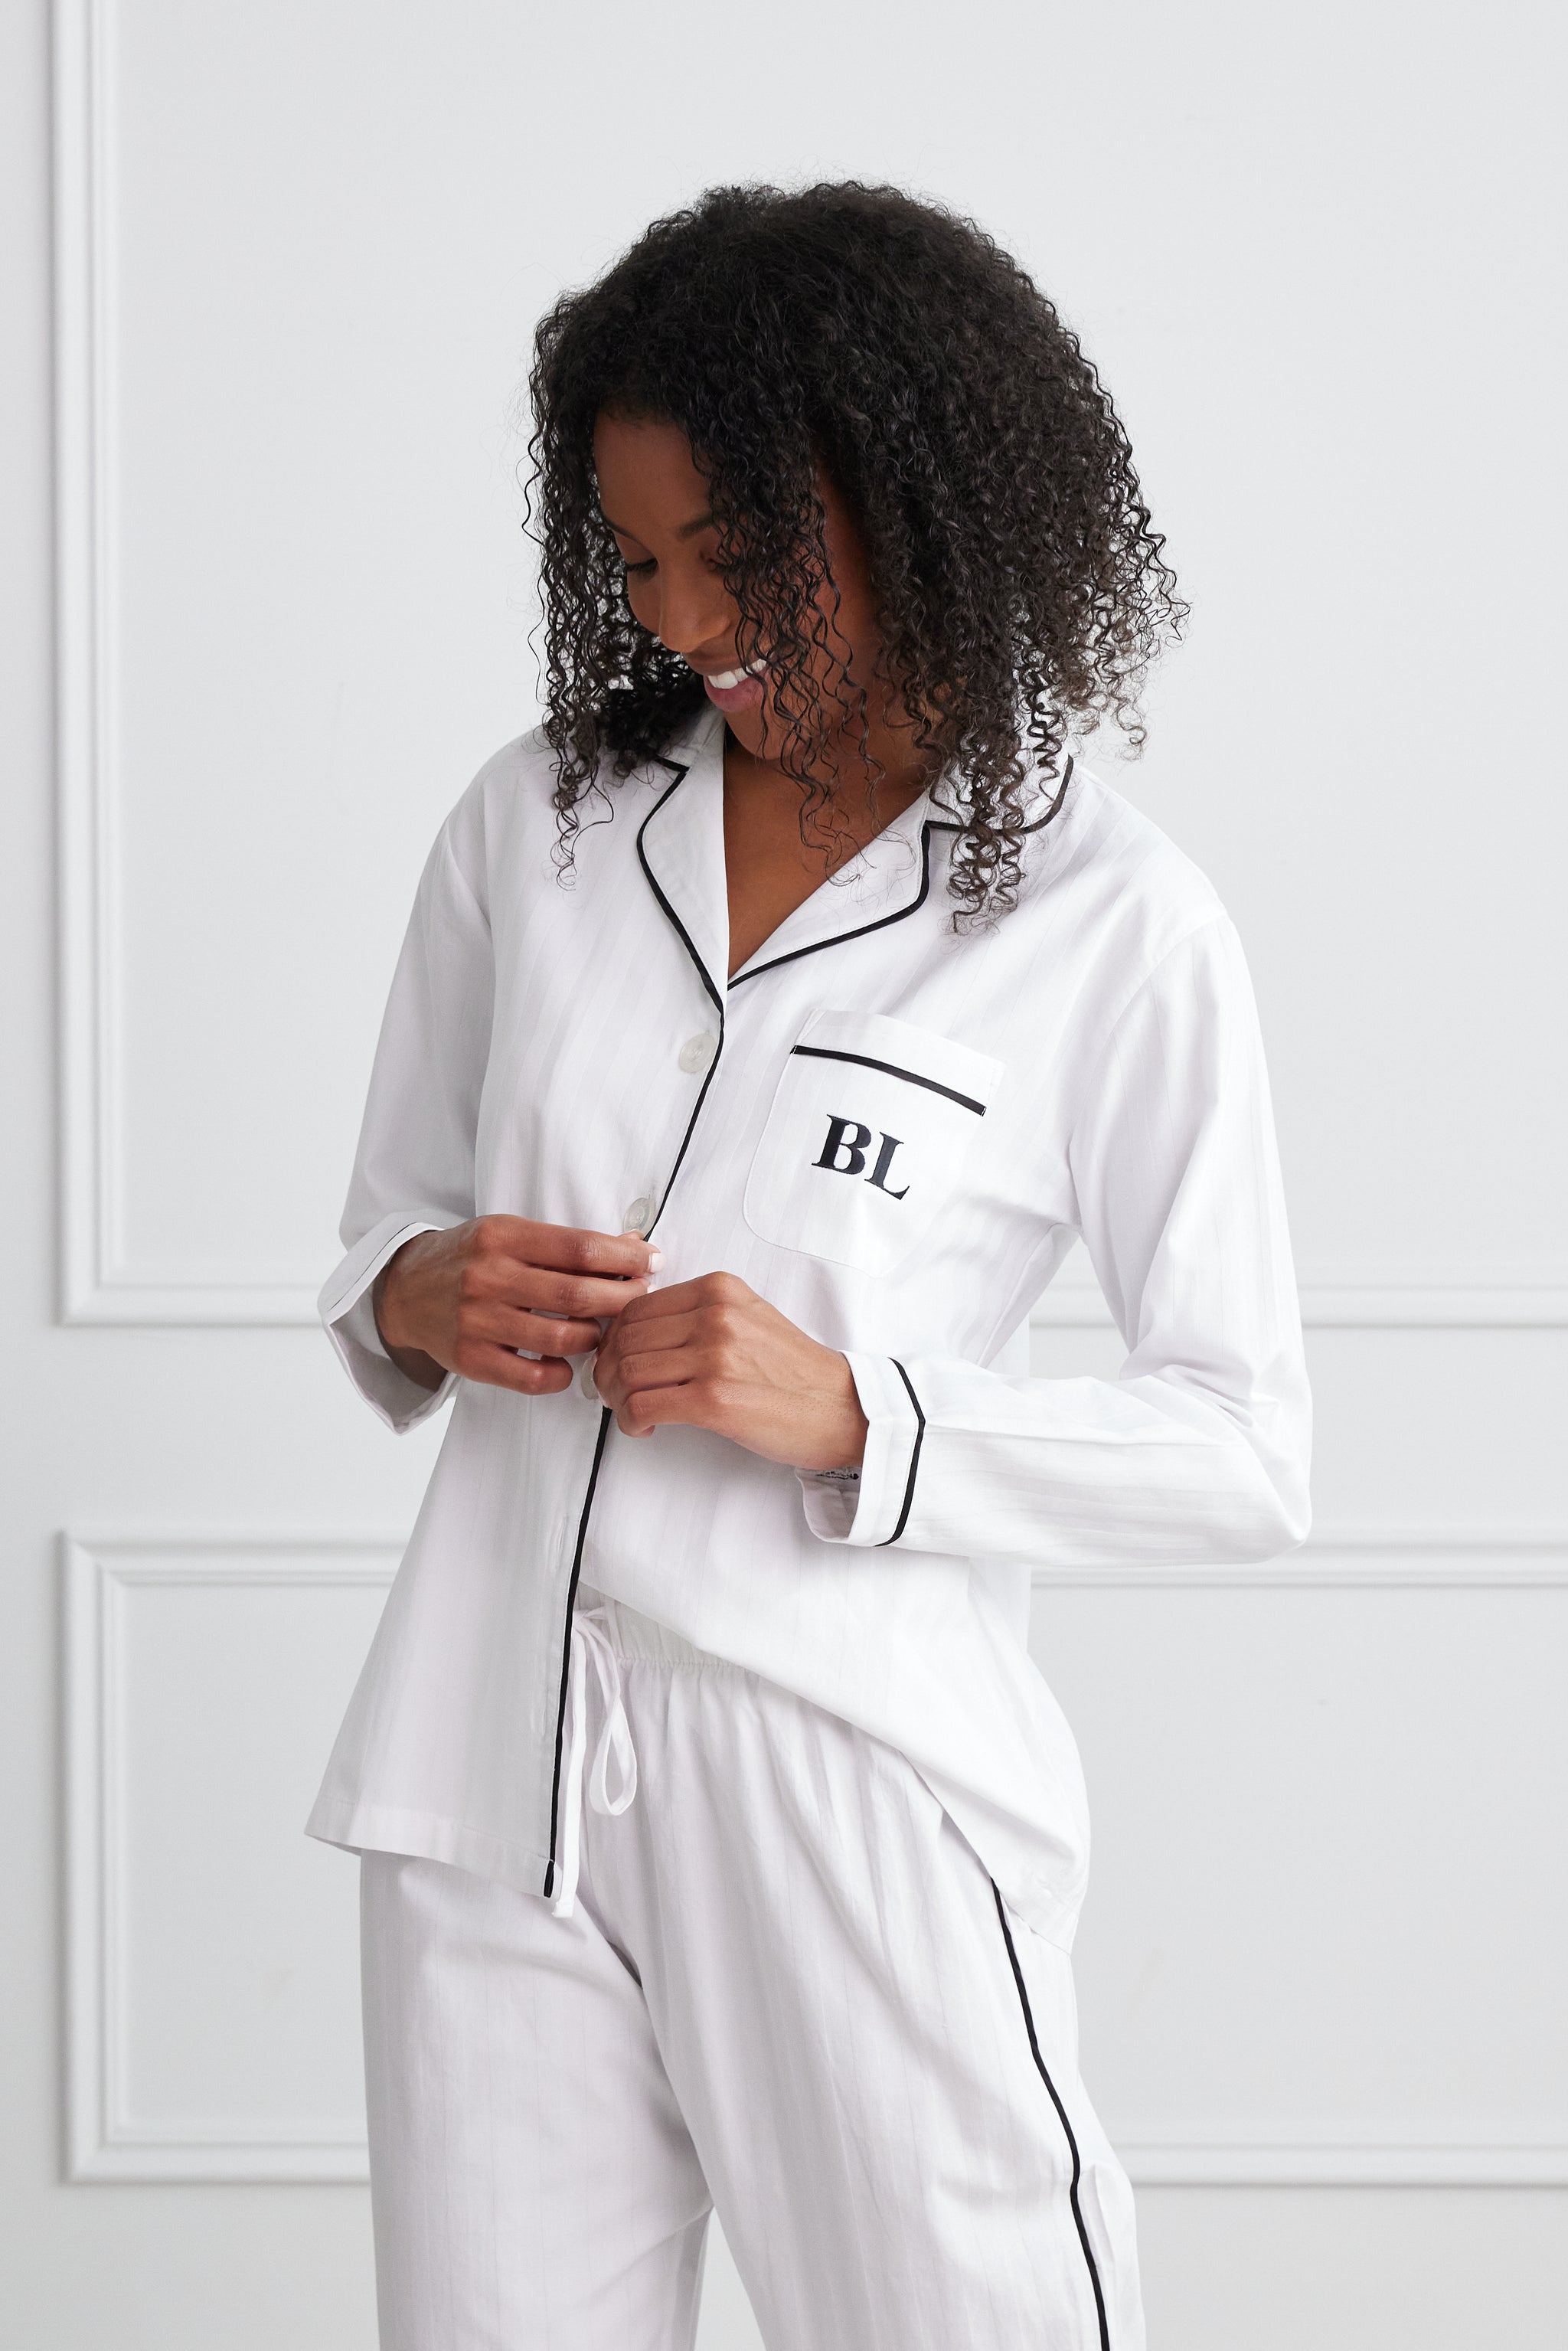 KIP Luxurious Cotton Pajama Set - Fairmont Store Canada